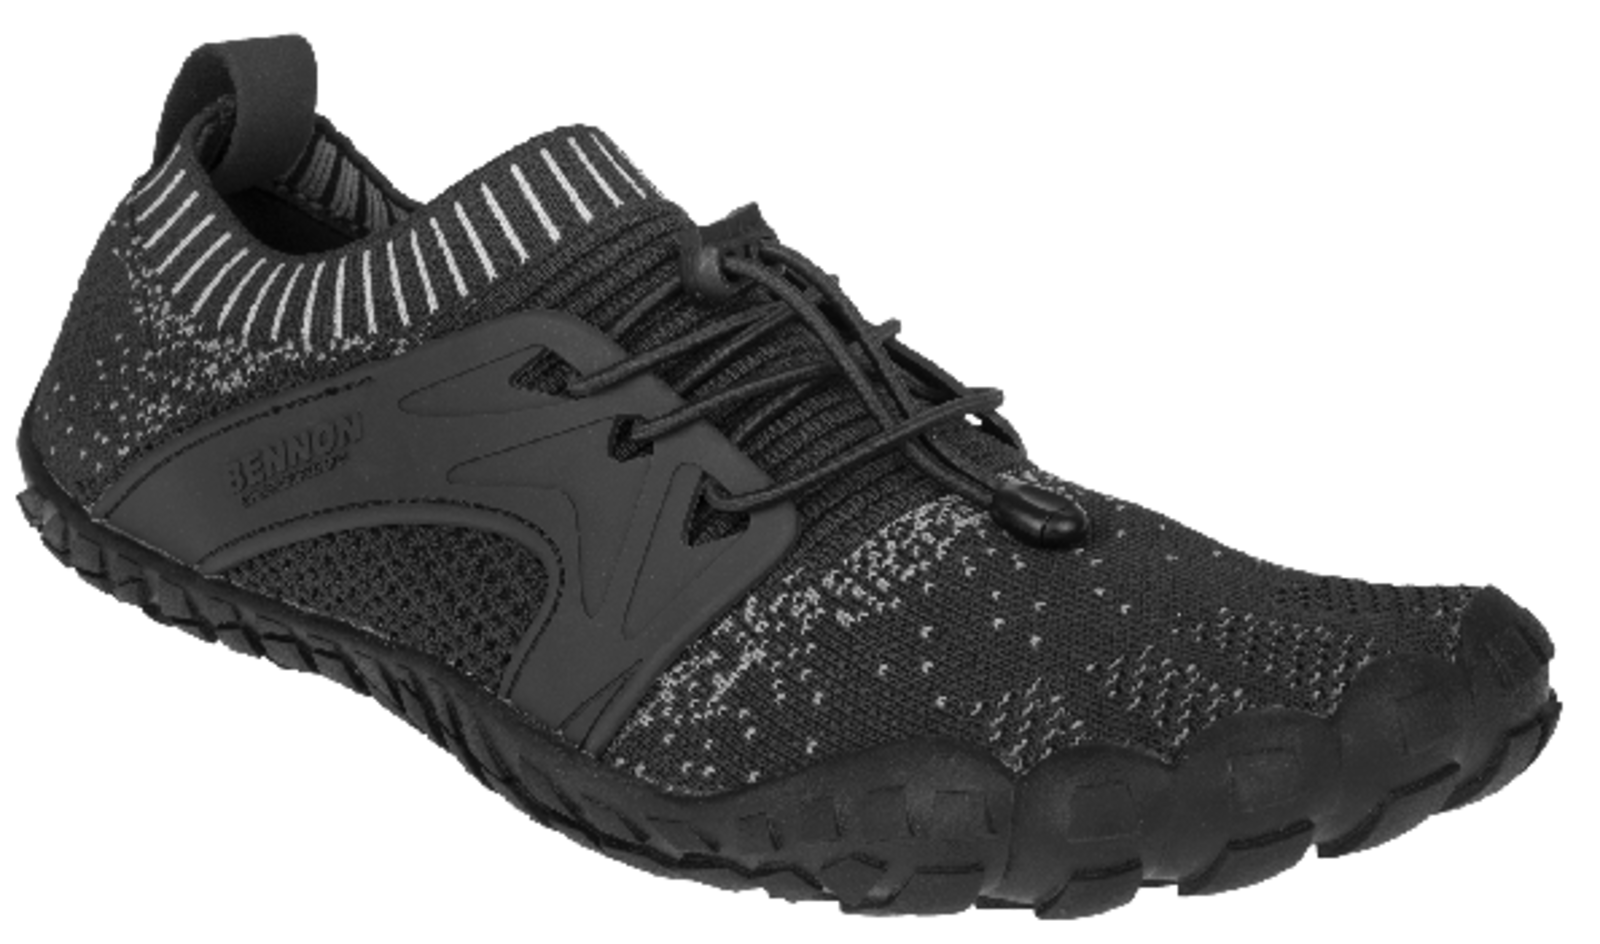 Voľnočasová barefoot obuv Bennon Bosky - veľkosť: 42, farba: čierna/biela